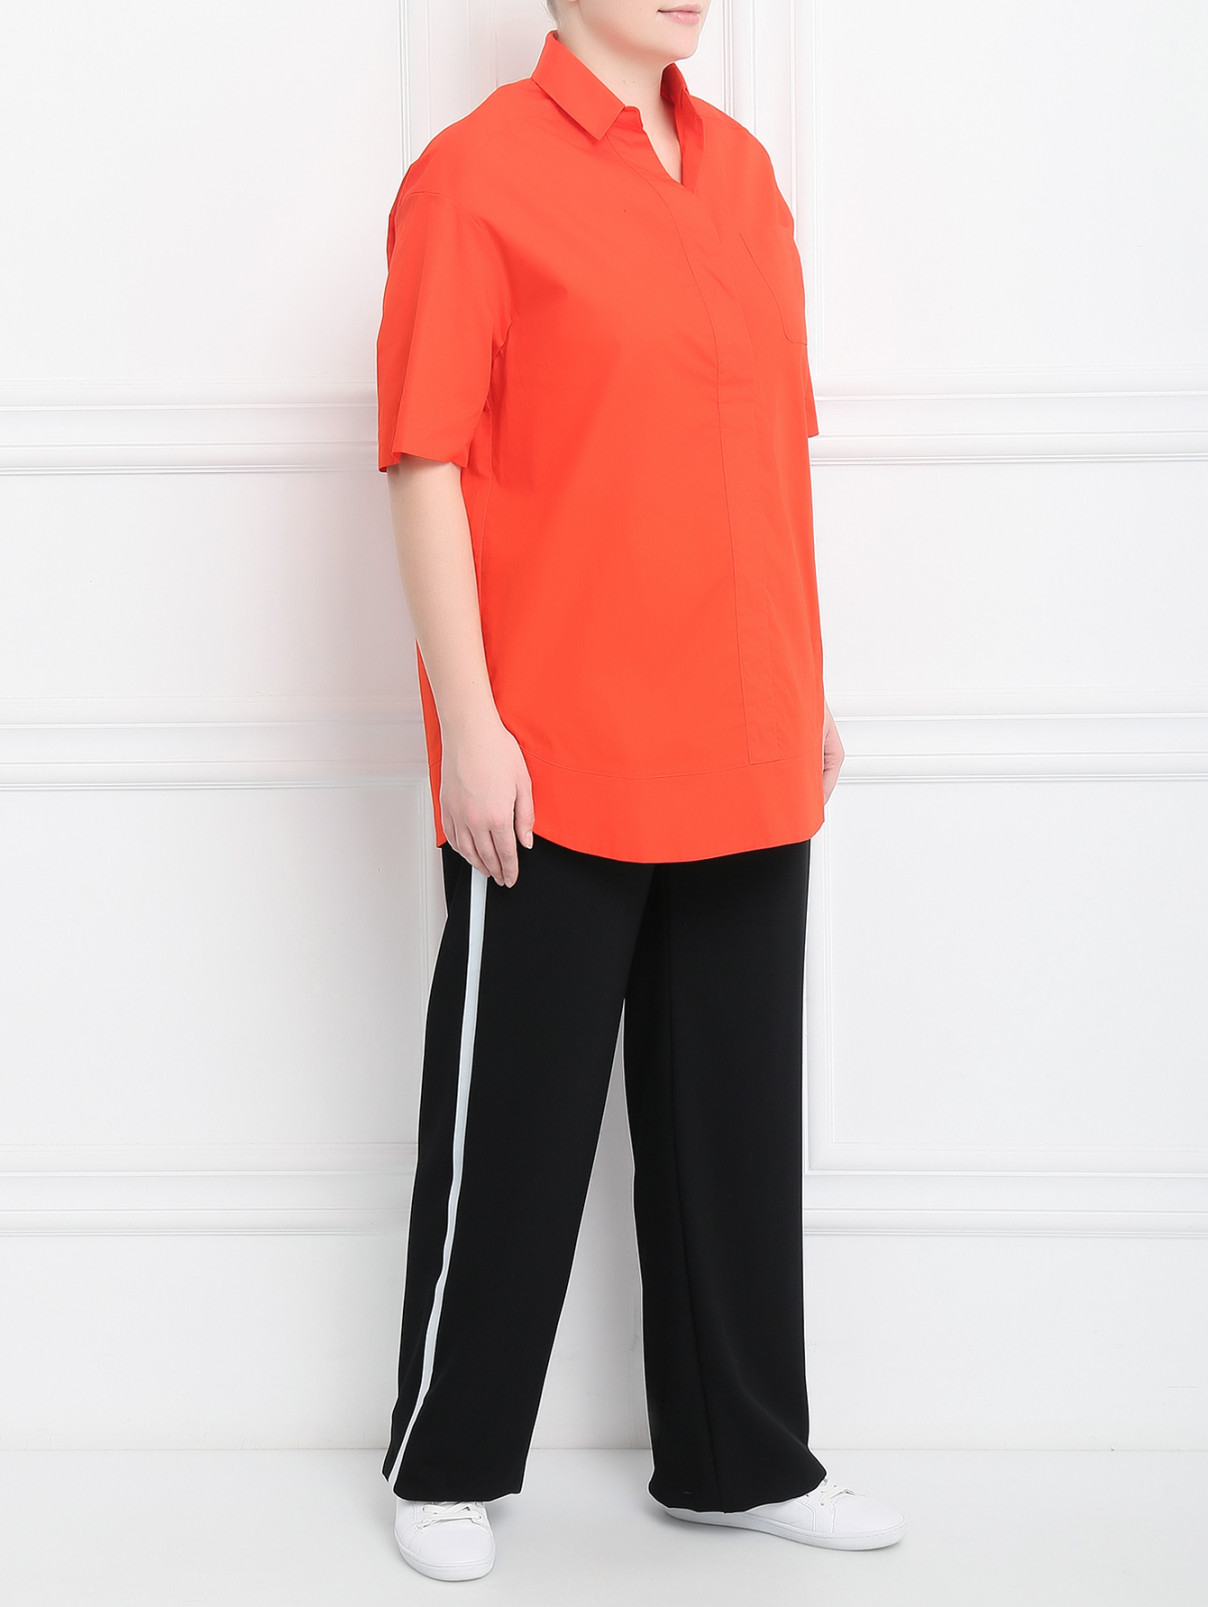 Блуза из хлопка с короткими рукавами Marina Sport  –  Модель Общий вид  – Цвет:  Красный